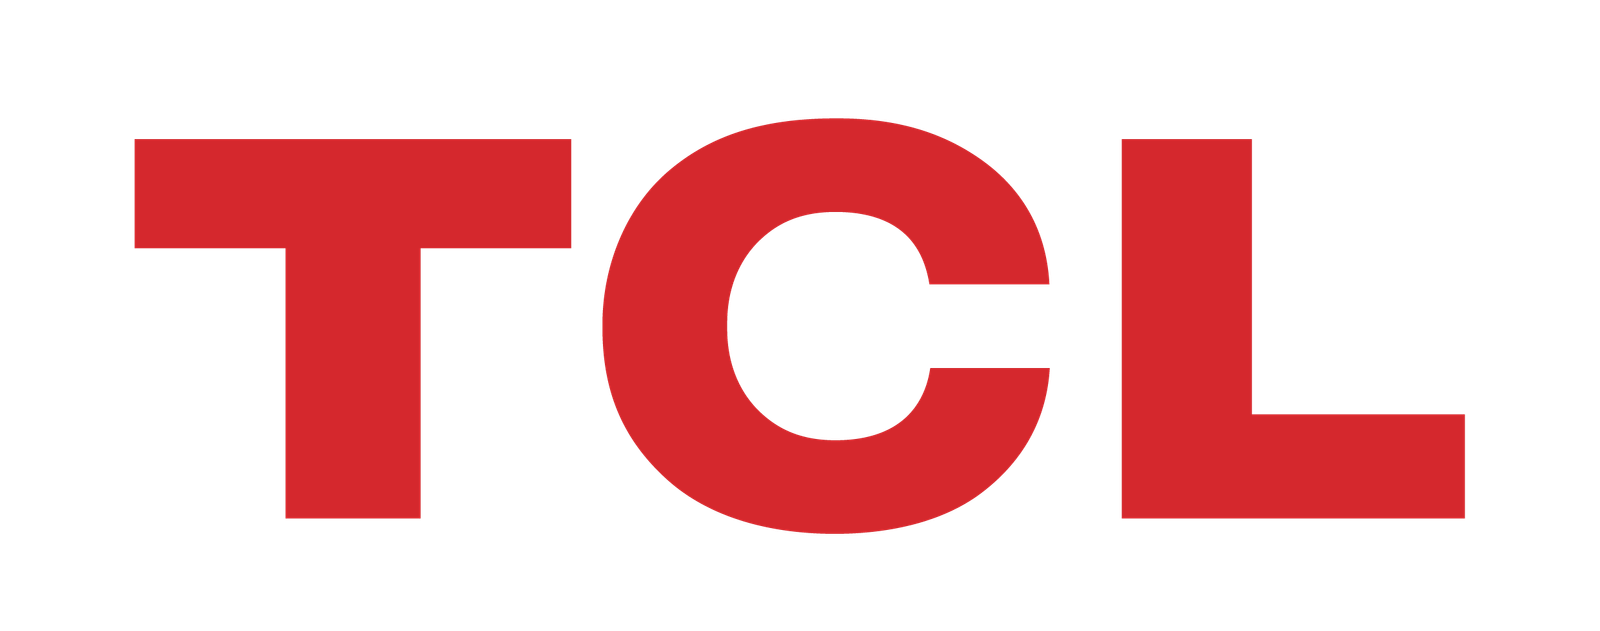 TCL logo Main